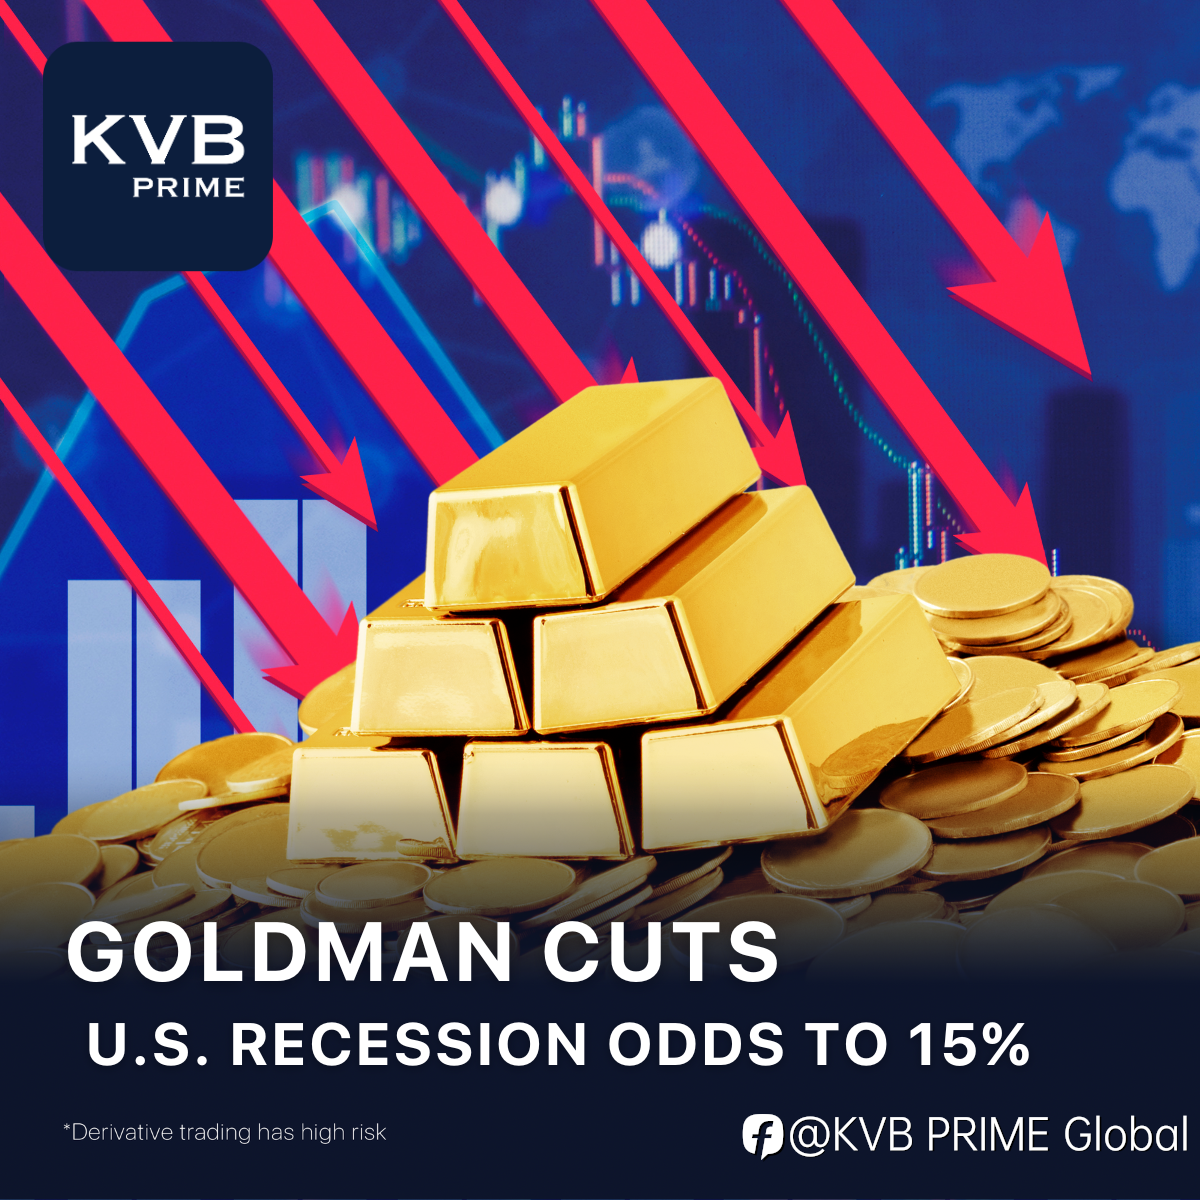 Goldman cuts U.S. recession odds to 15%